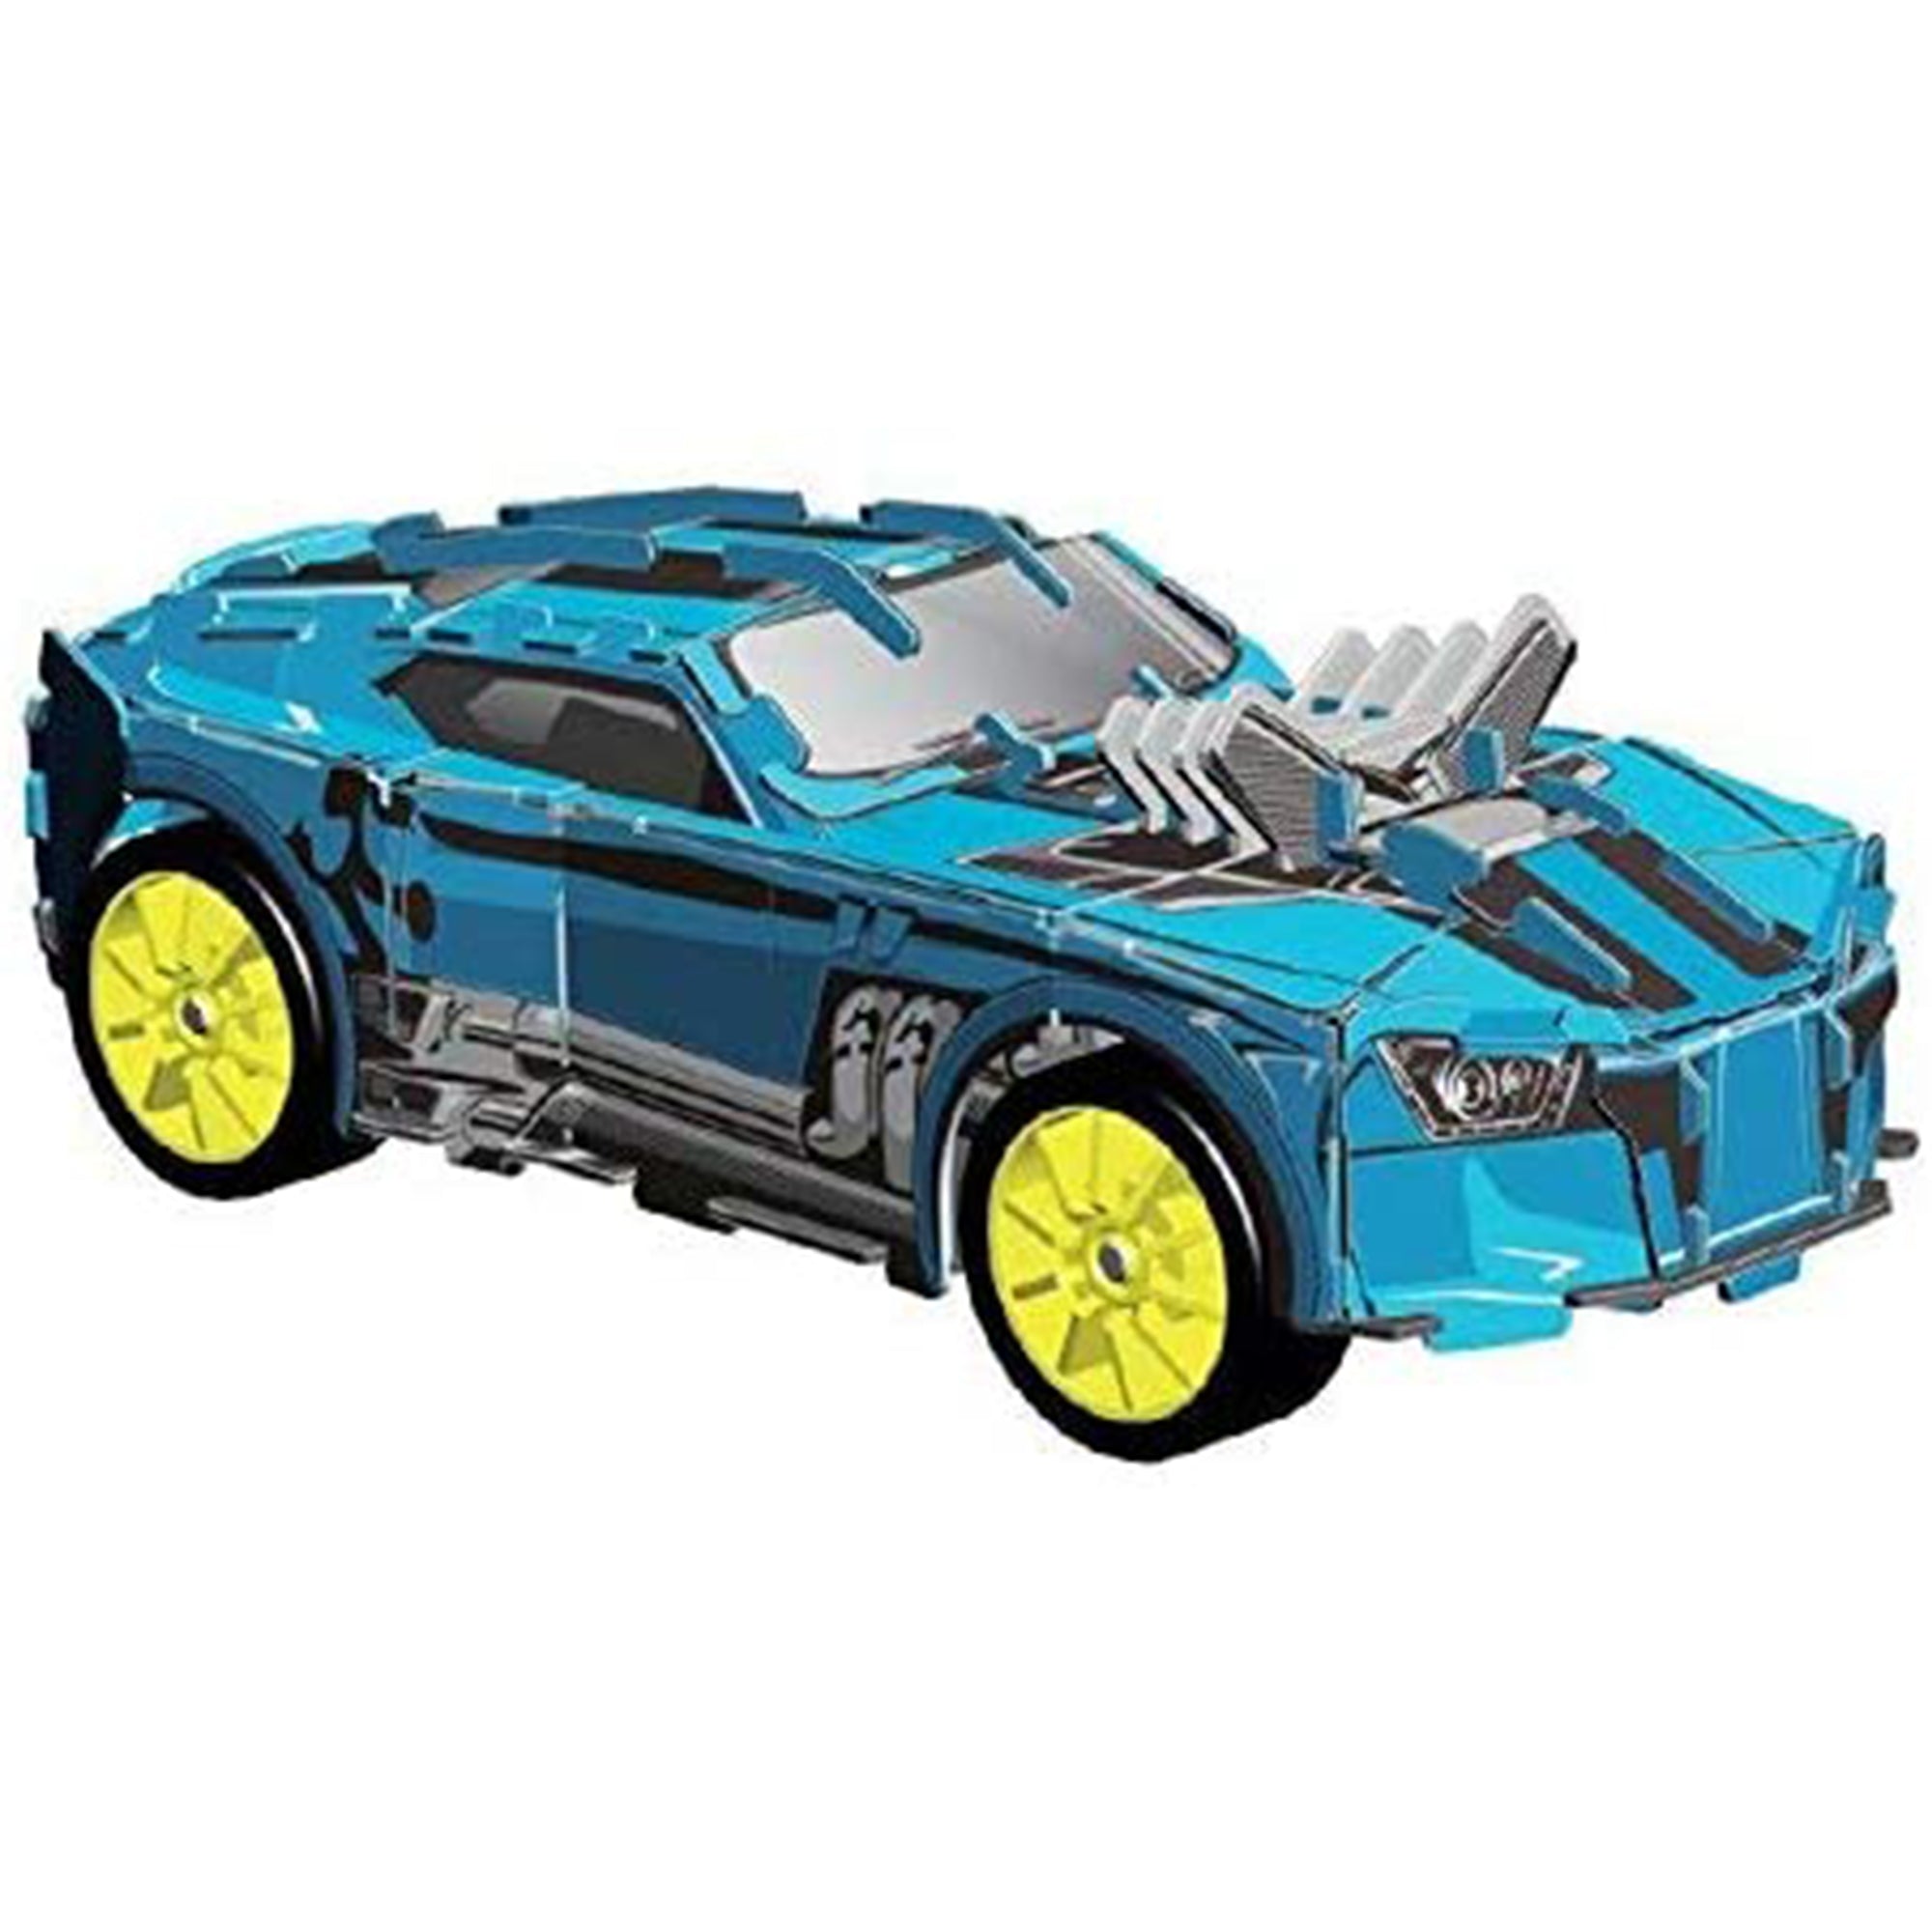 Modellino puzzle 3D racers automobile gioco creaivo 22 pezzi 2810